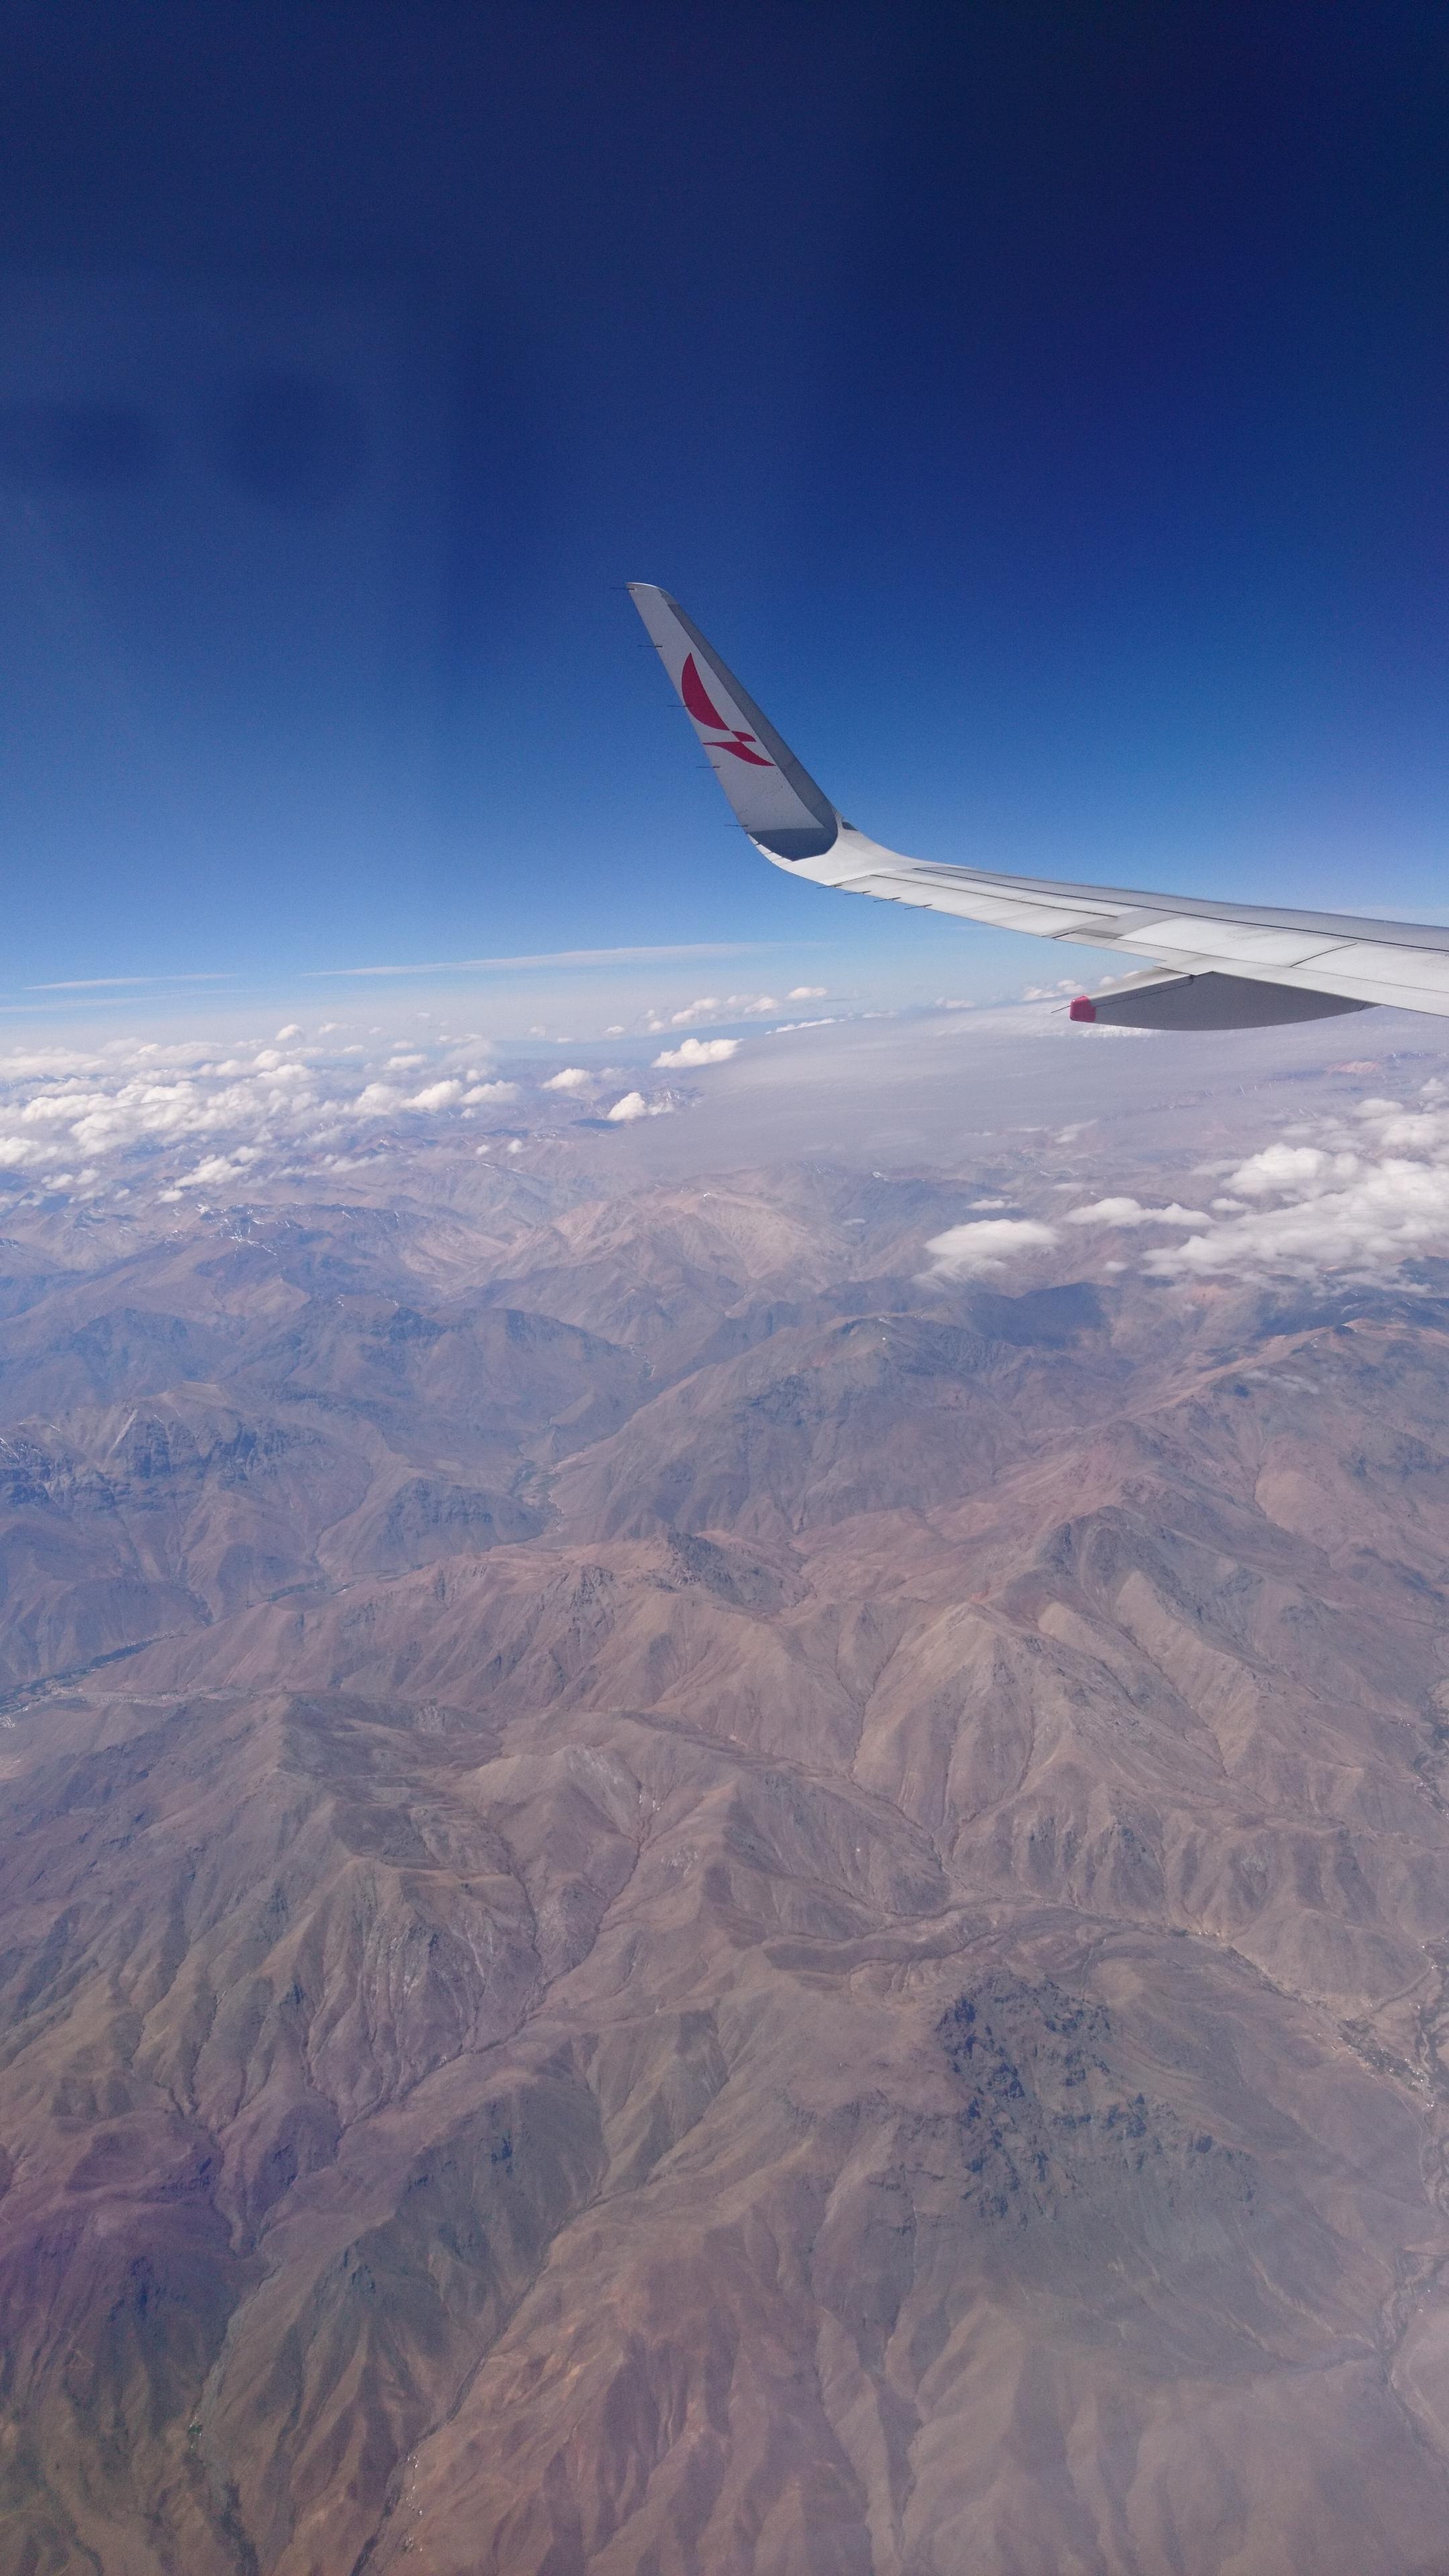 Chile ich bin auf dem Weg... ✈ 🙌
#travel #Urlaub #reise #outdoor #meinschönsterurlaub #wandern #patagonien 